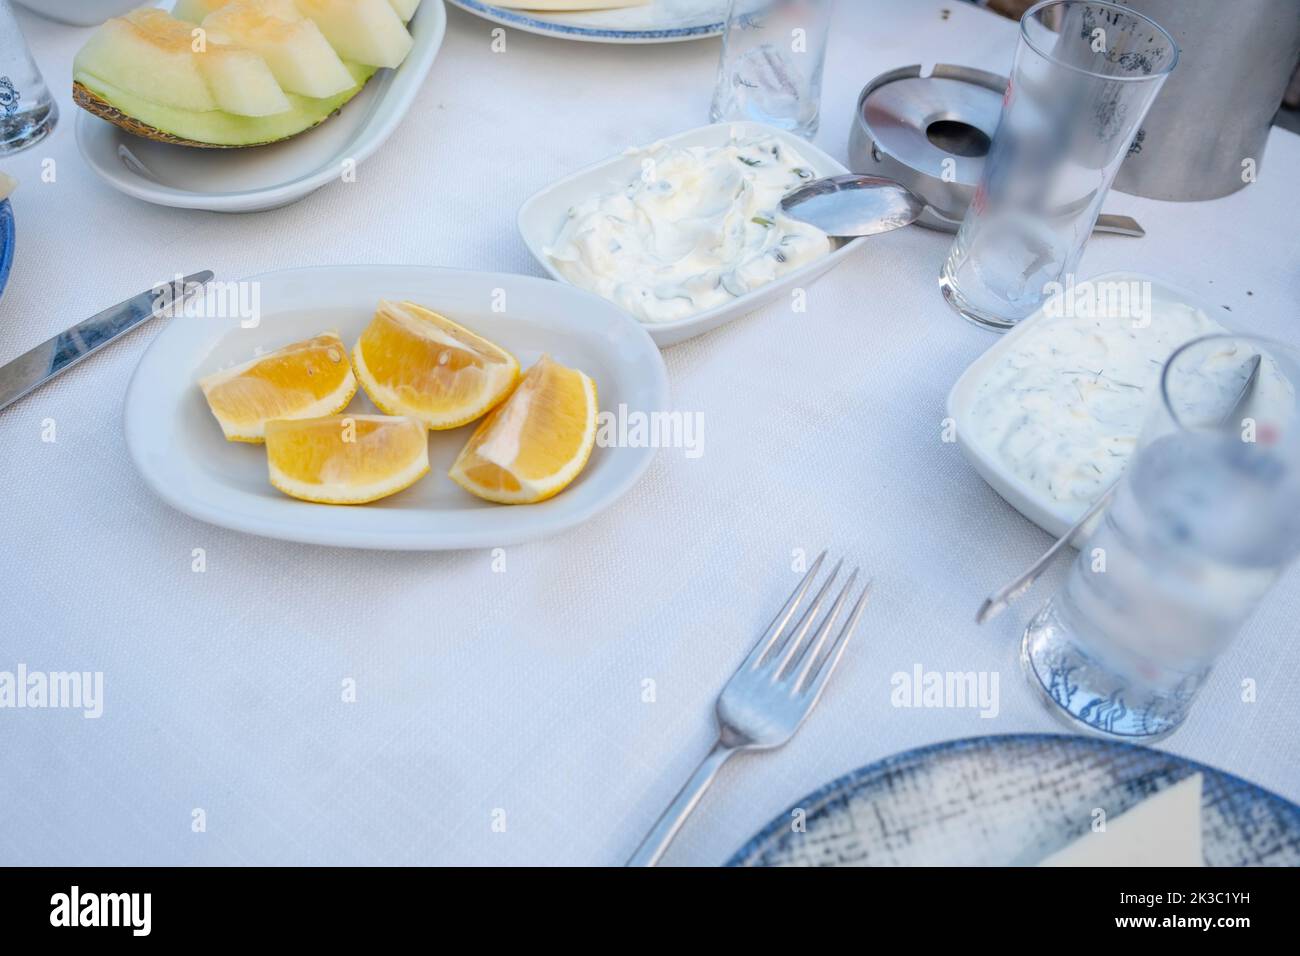 Türkischer Raki-Tisch mit Melone, Zitrone und Vorspeise, traditioneller türkischer Alkohol, bekannt als Rakı, chillen Sie mit Freunden im Restaurant, Essen und Essen Idee Stockfoto